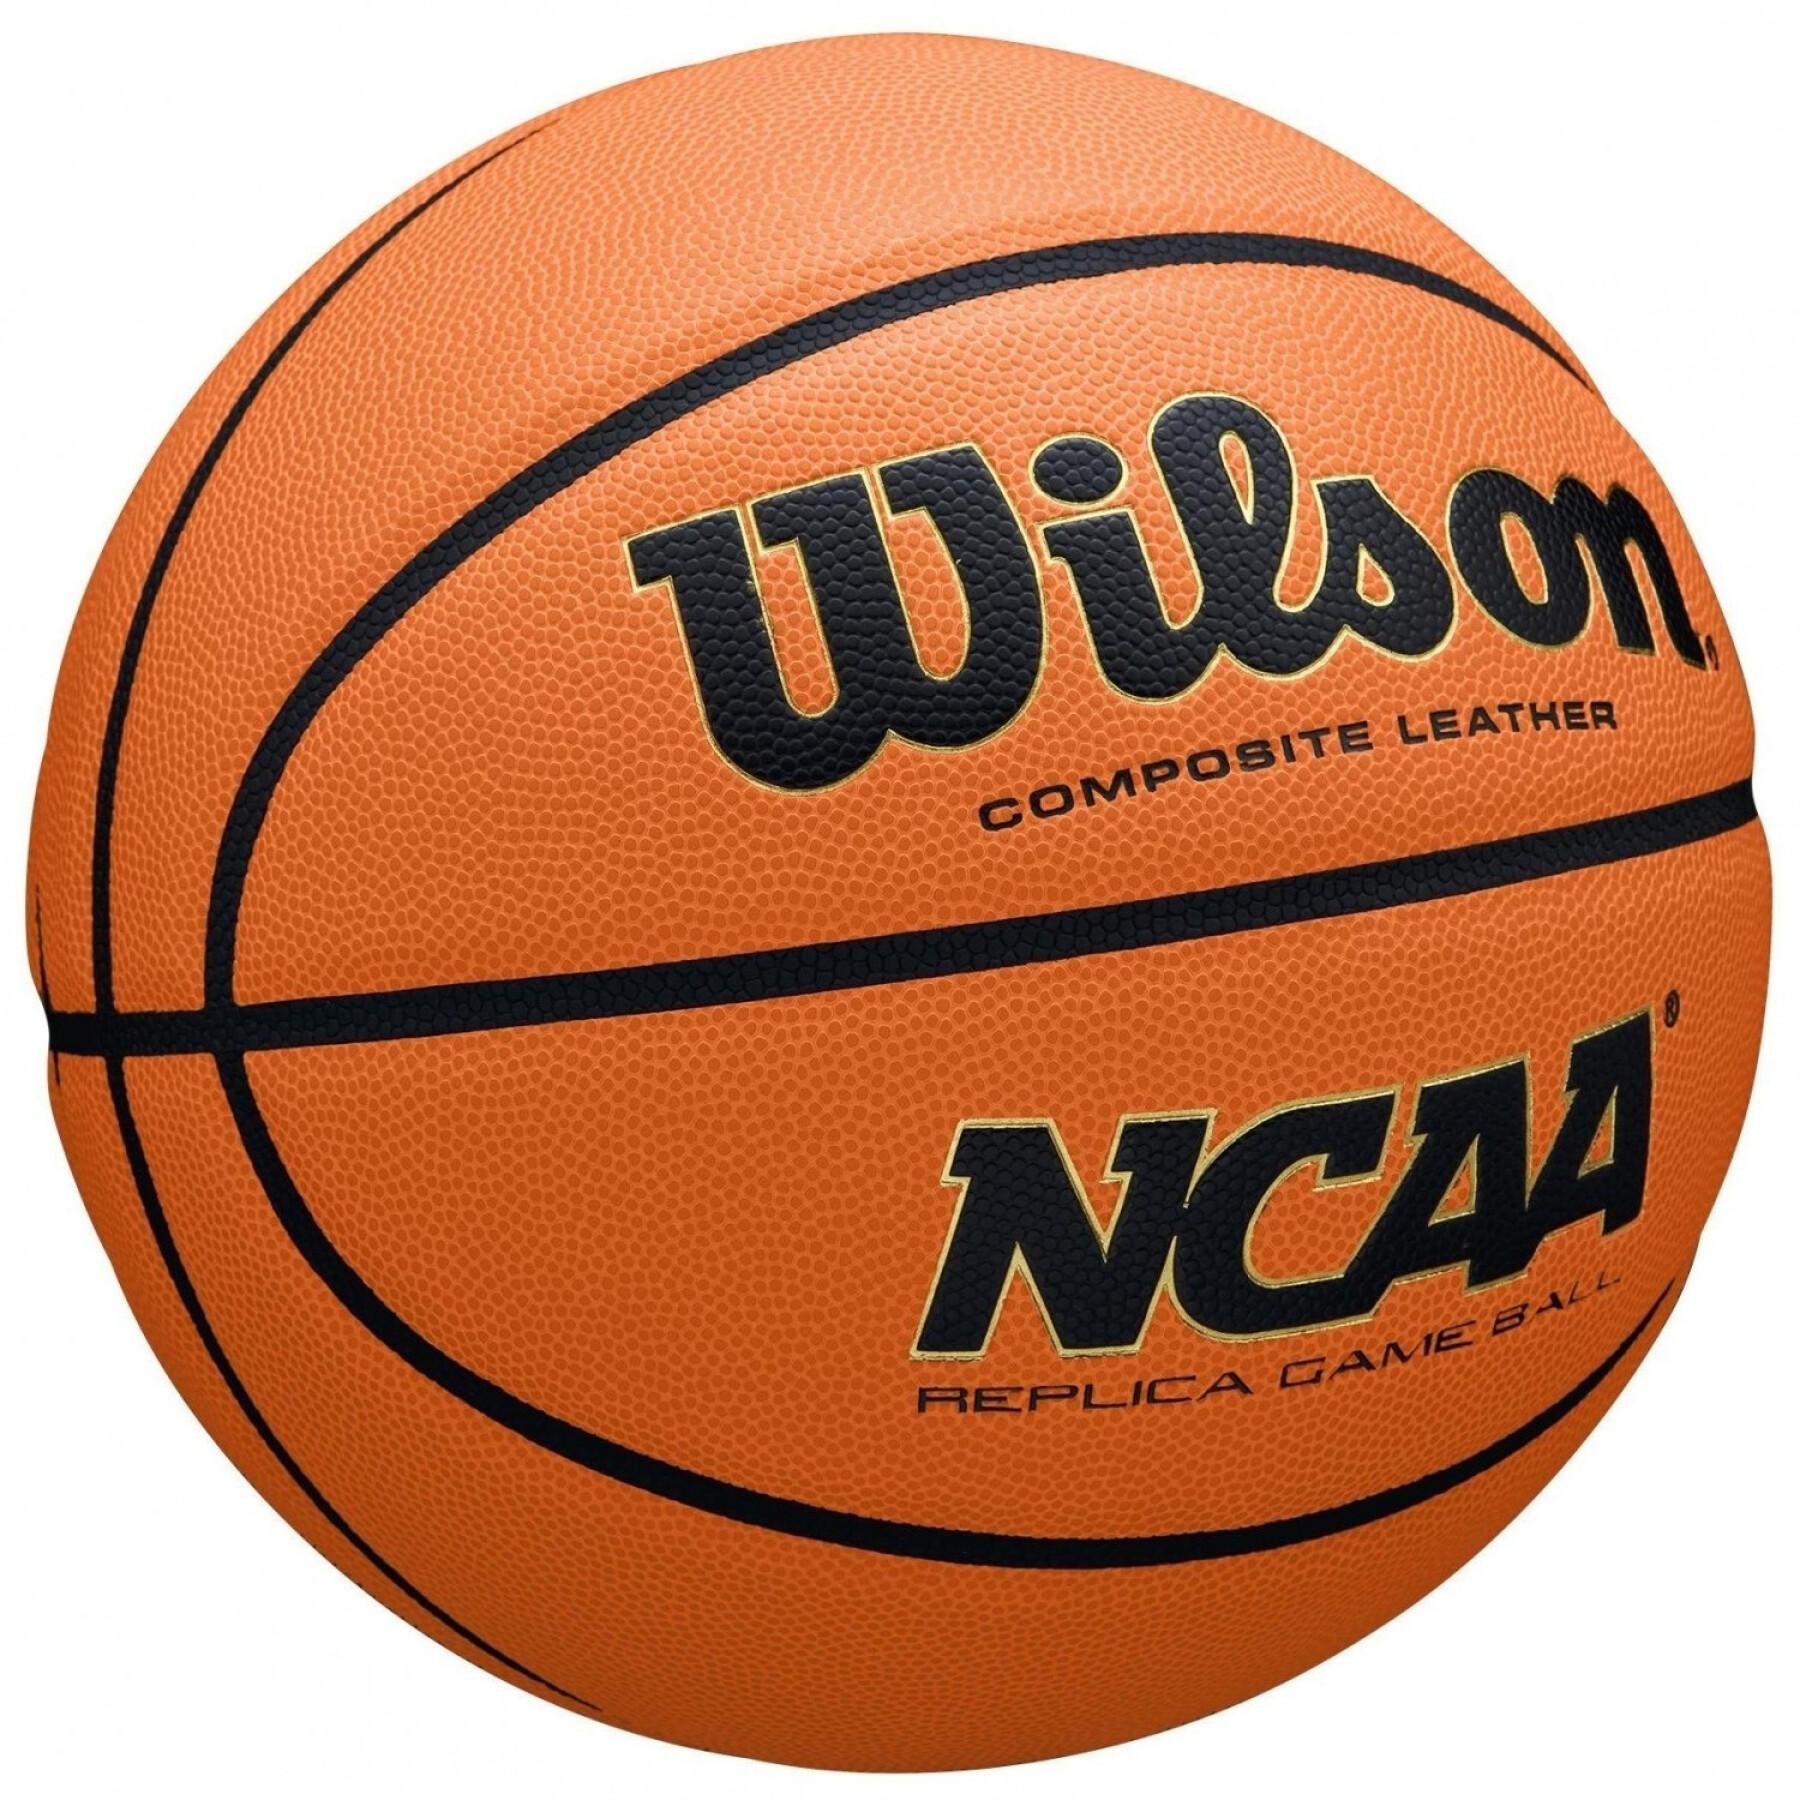 Balón NCAA Evo Nxt Replica